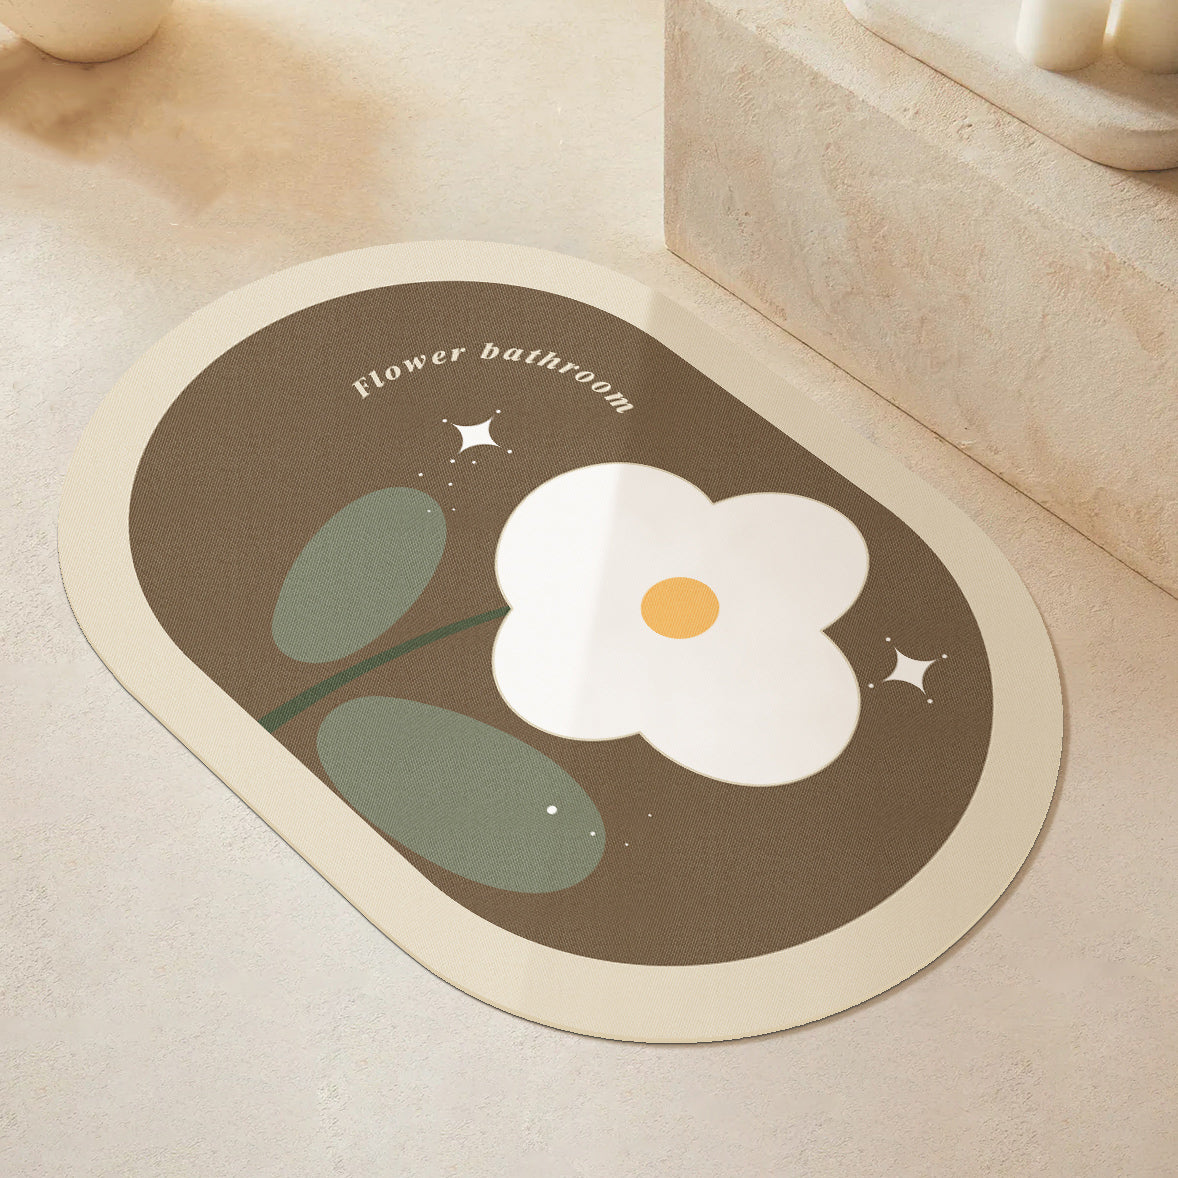 8design dream flower bath mat